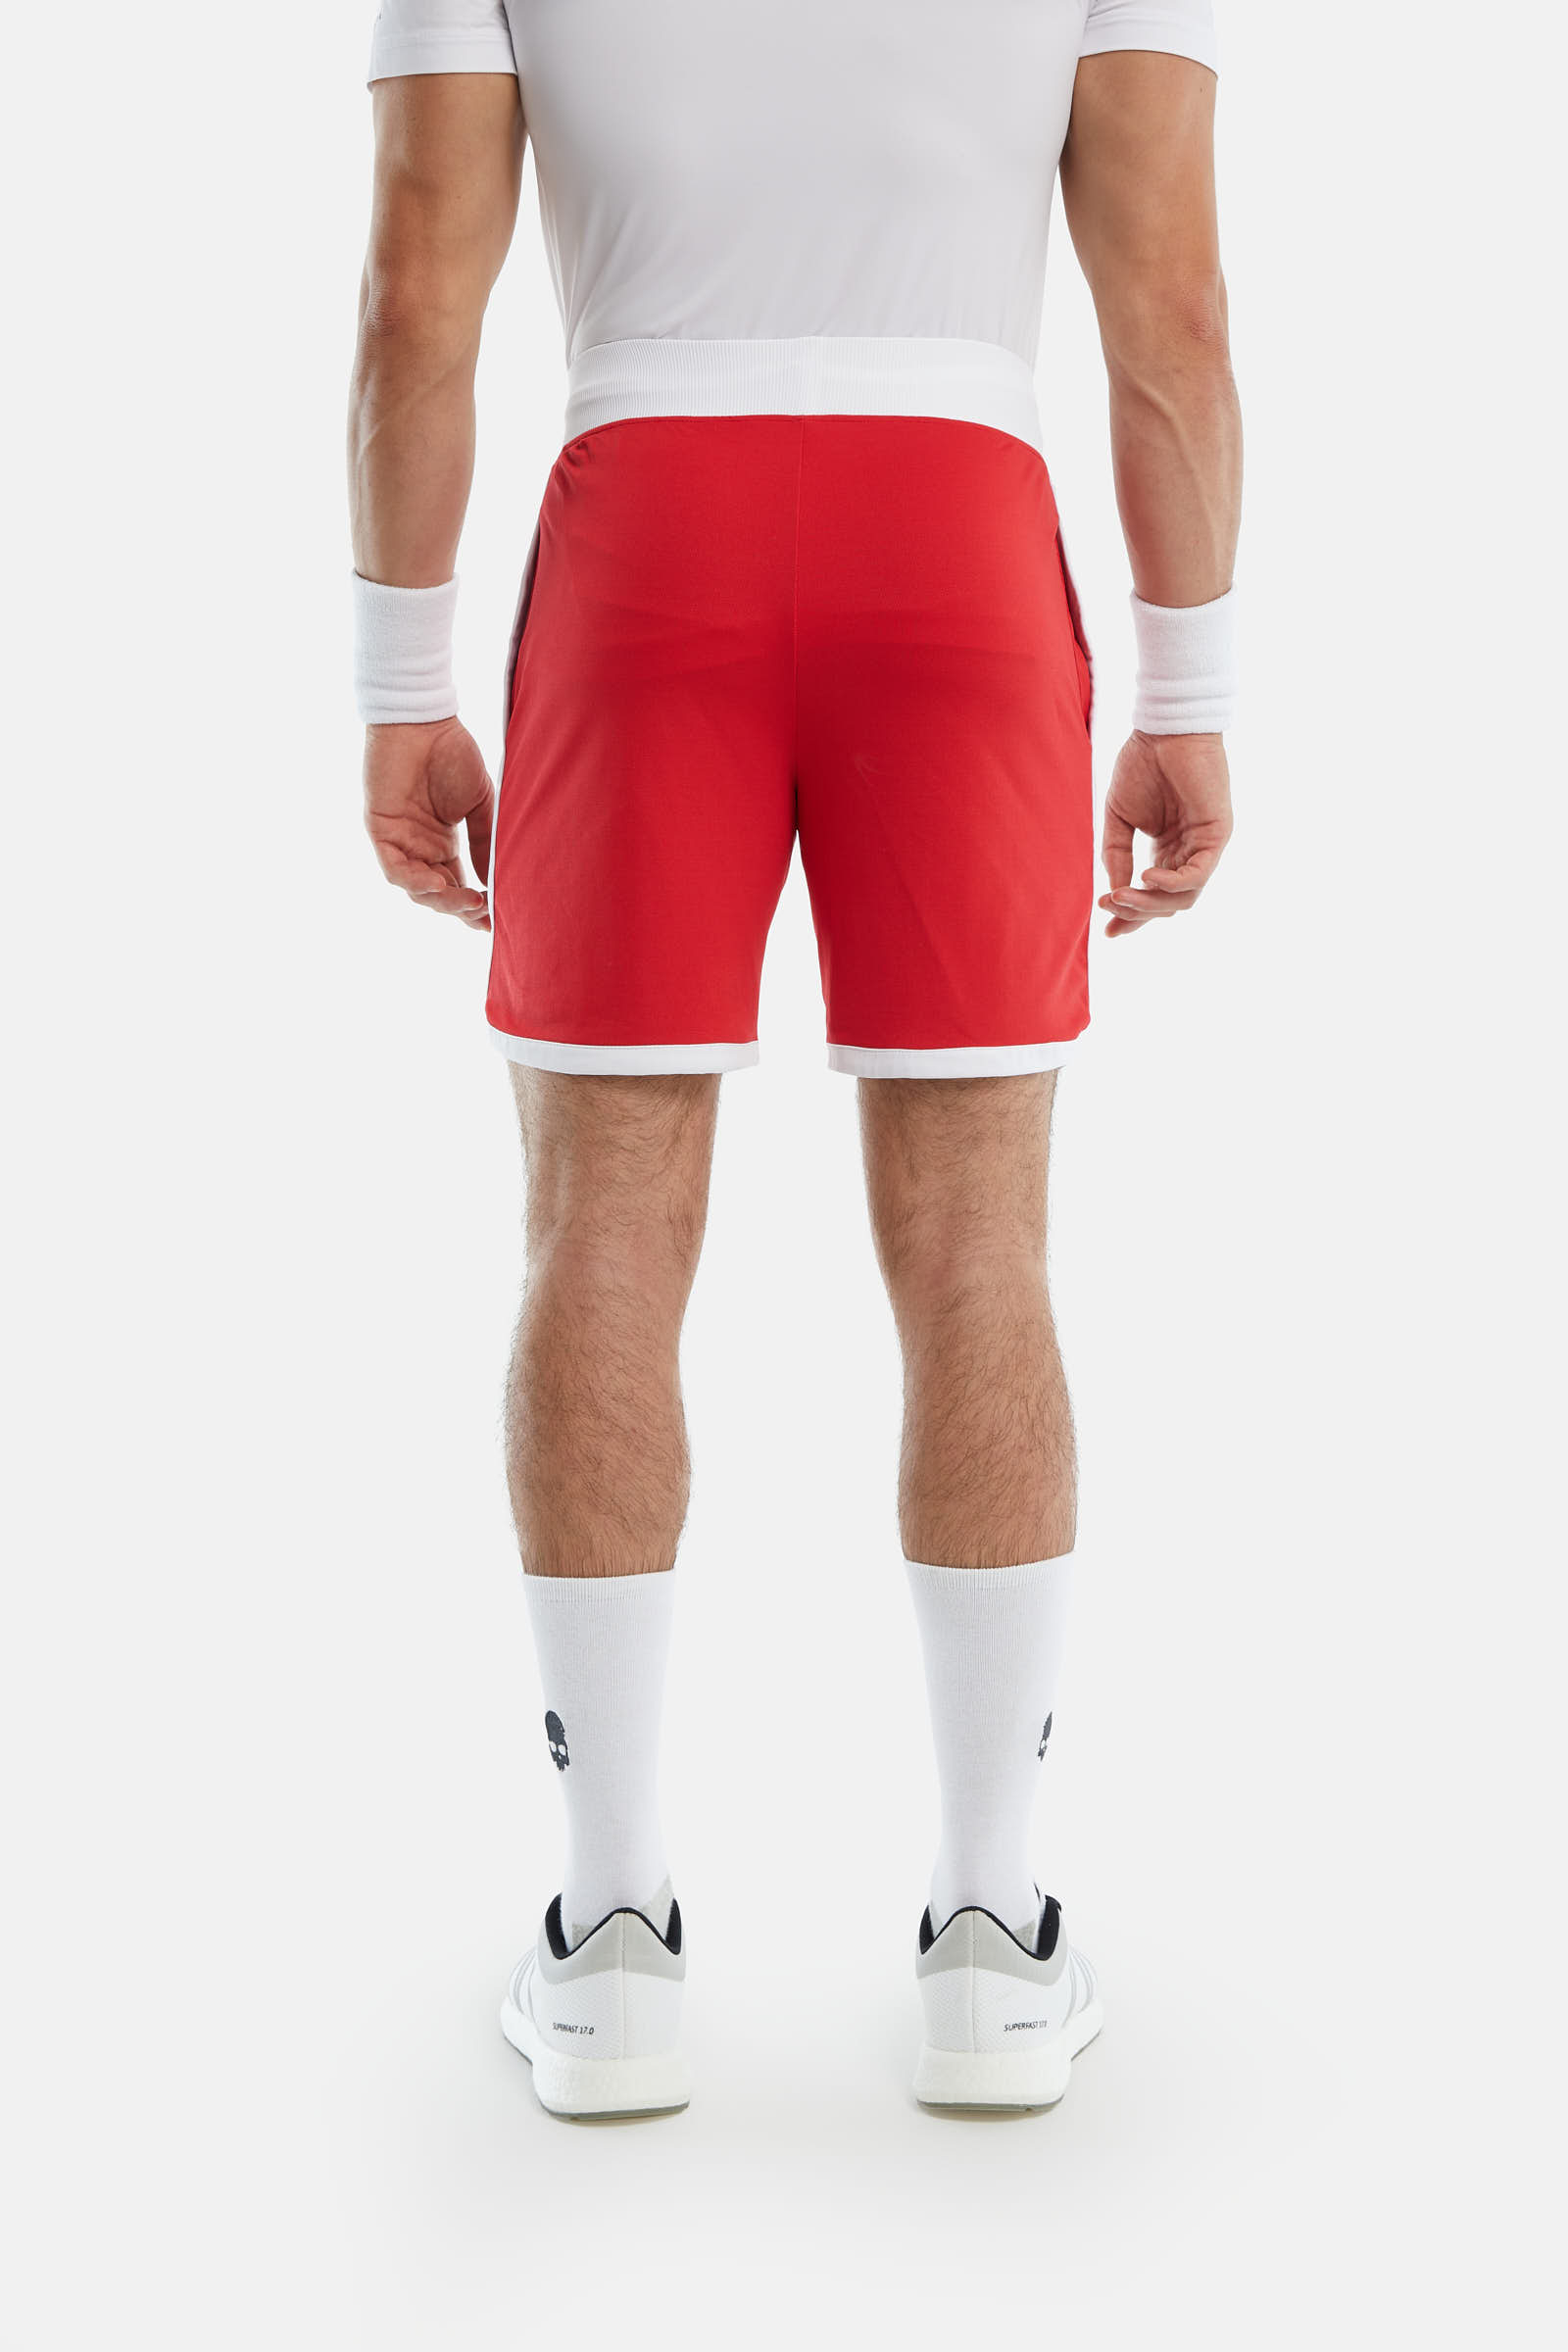 TECH SHORTS - RED,WHITE - Hydrogen - Luxury Sportwear